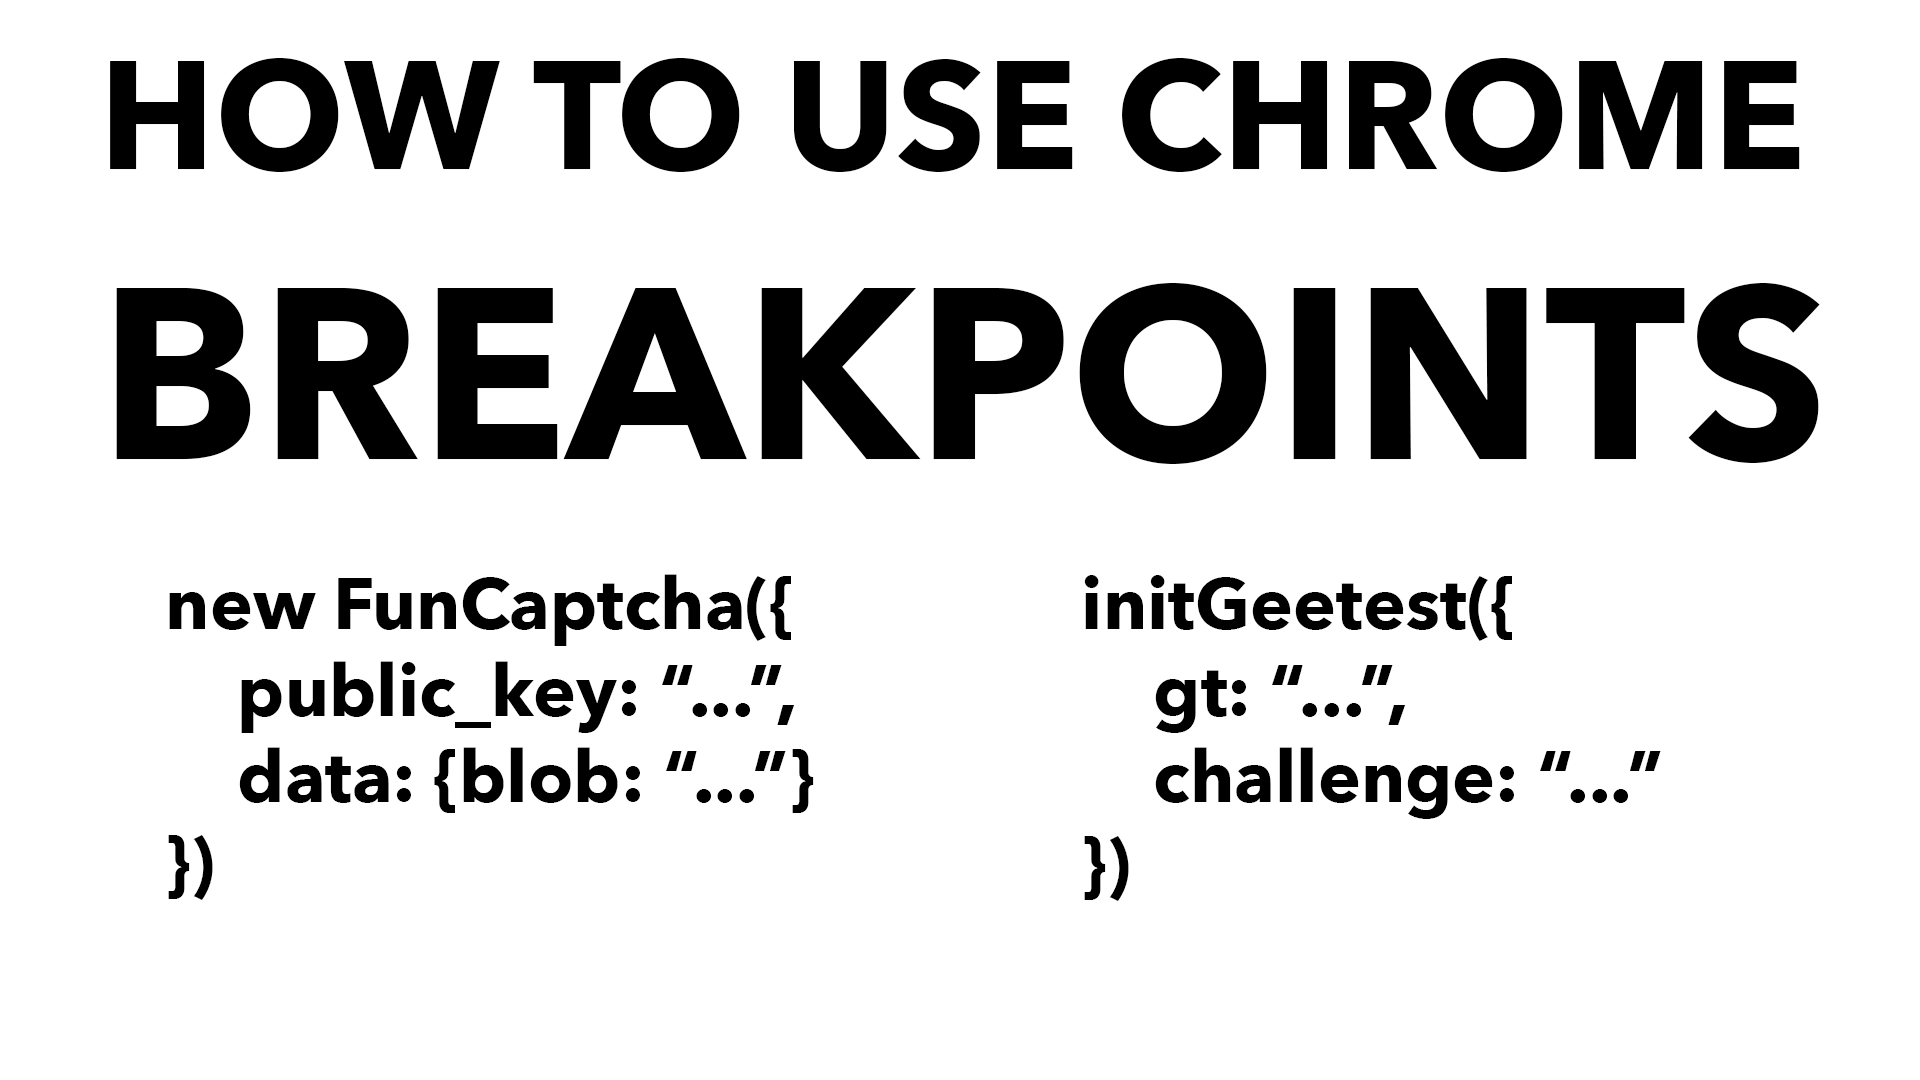 Matutunan kung paano gumamit ng mga breakpoint sa Chrome upang mahanap ang mga parameter ng API para sa FunCaptcha at Geetest